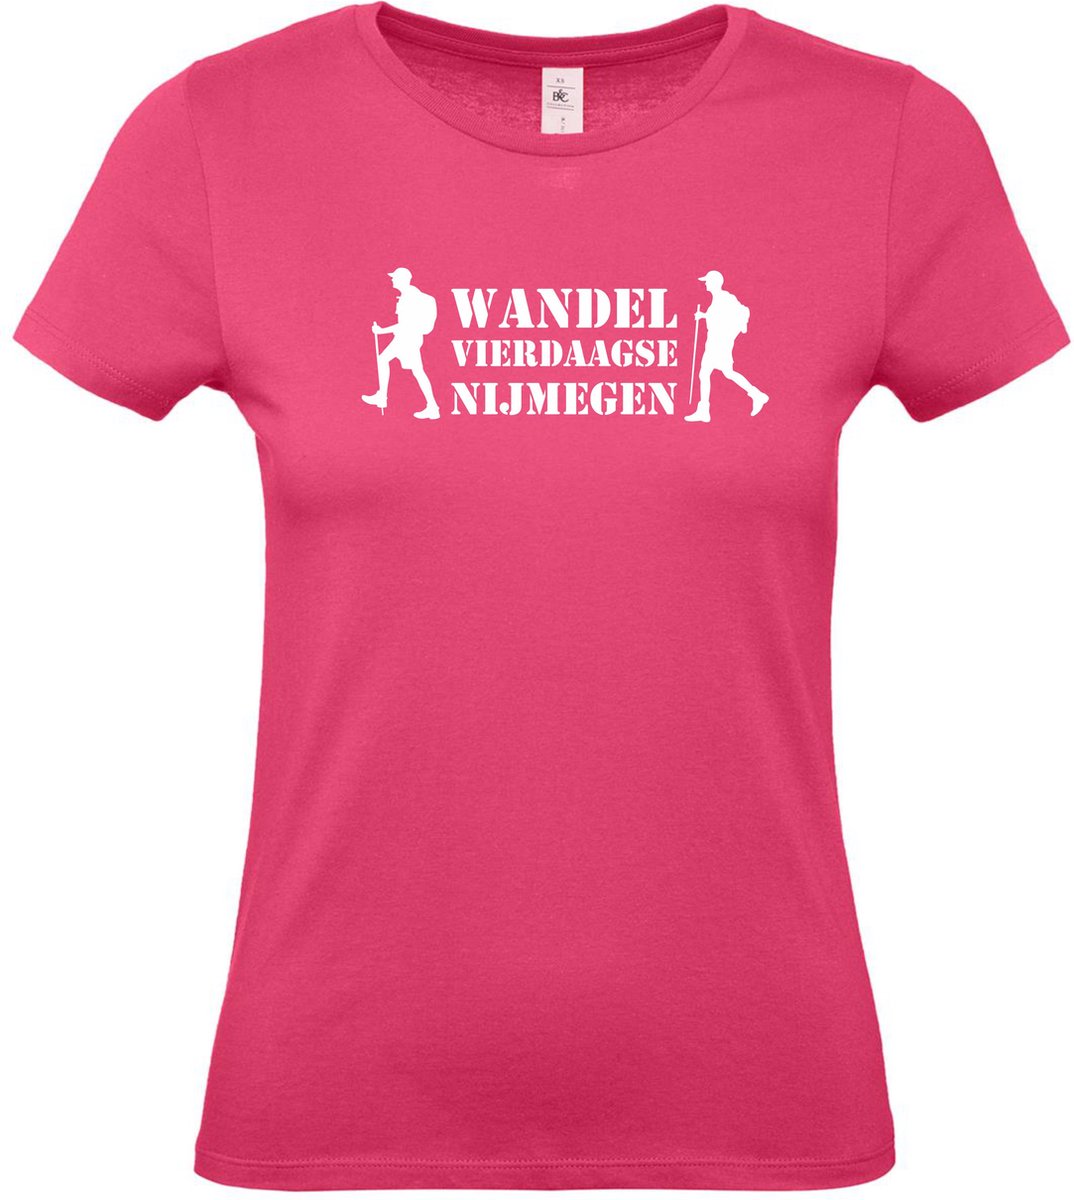 Dames t-shirt Wandel vierdaagse NIjmegen met wandelaars |Wandelvierdaagse | vierdaagse Nijmegen | Roze woensdag | Roze | maat XXL